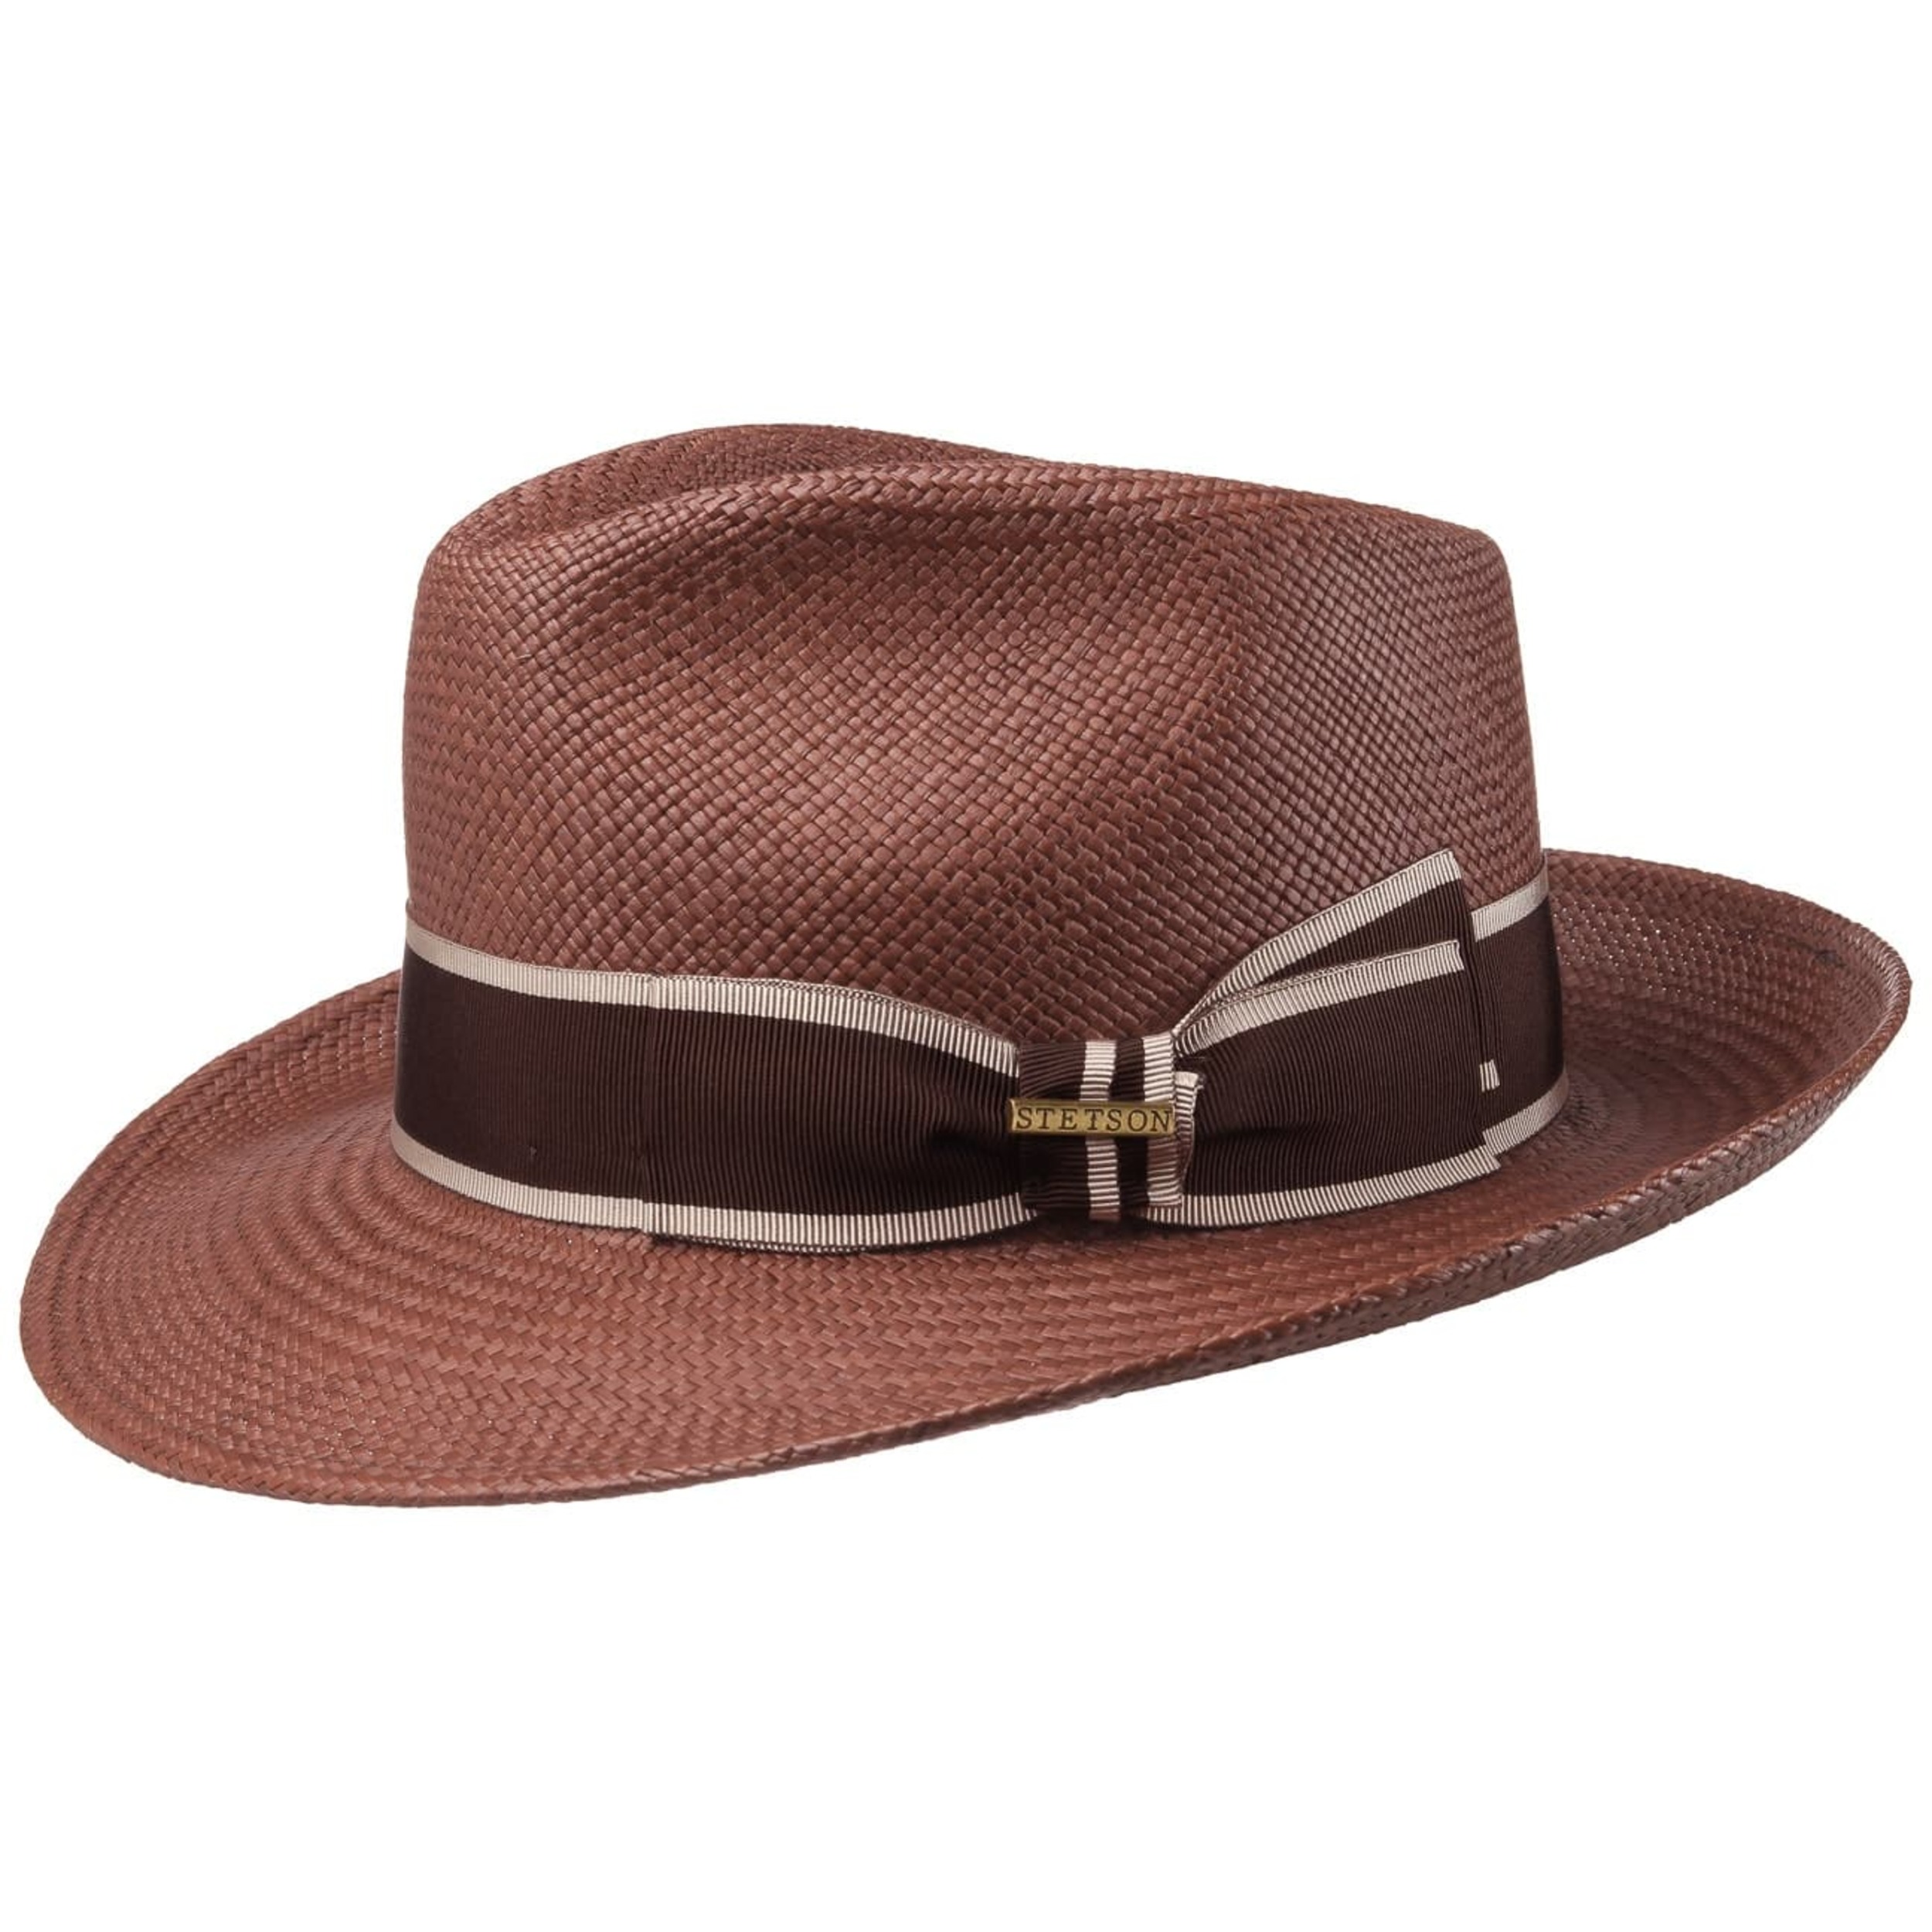 Airway Panama Safari Hat